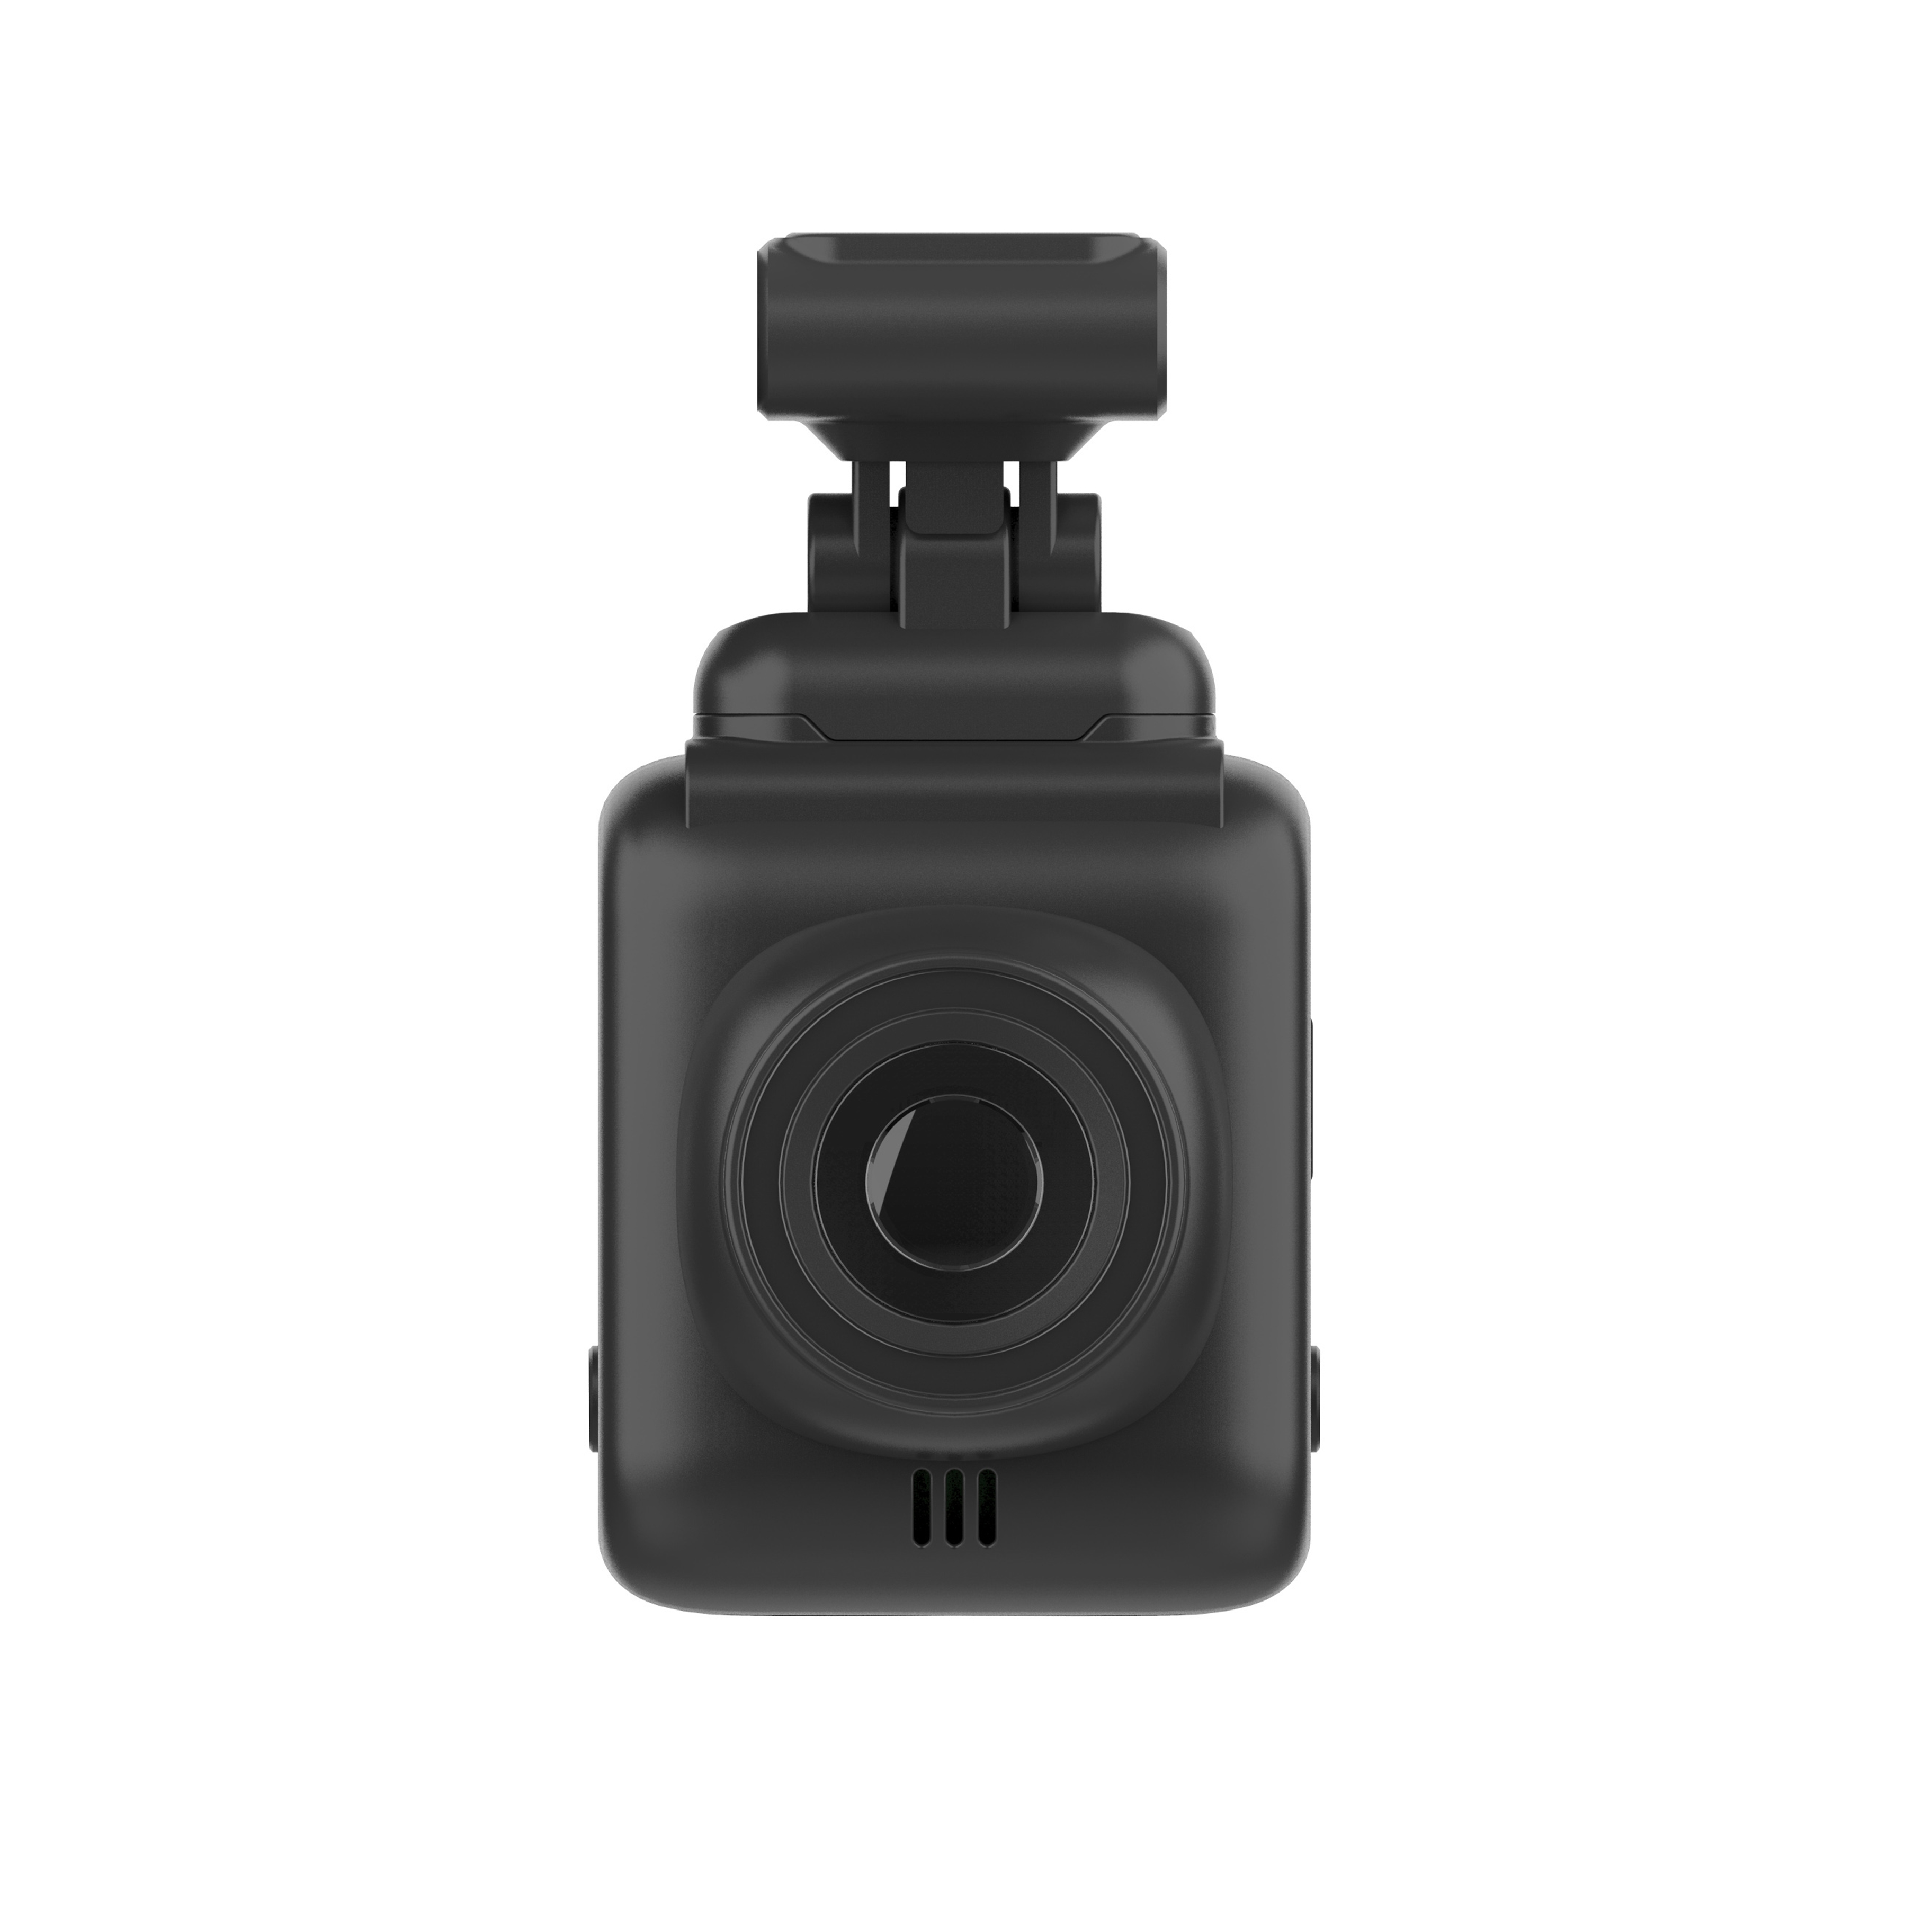 Camera Auto Tellur Dash Patrol DC1, FullHD 1080P, Lentila cu unghi larg de 140°, Card microSD, Negru 1080P imagine noua idaho.ro